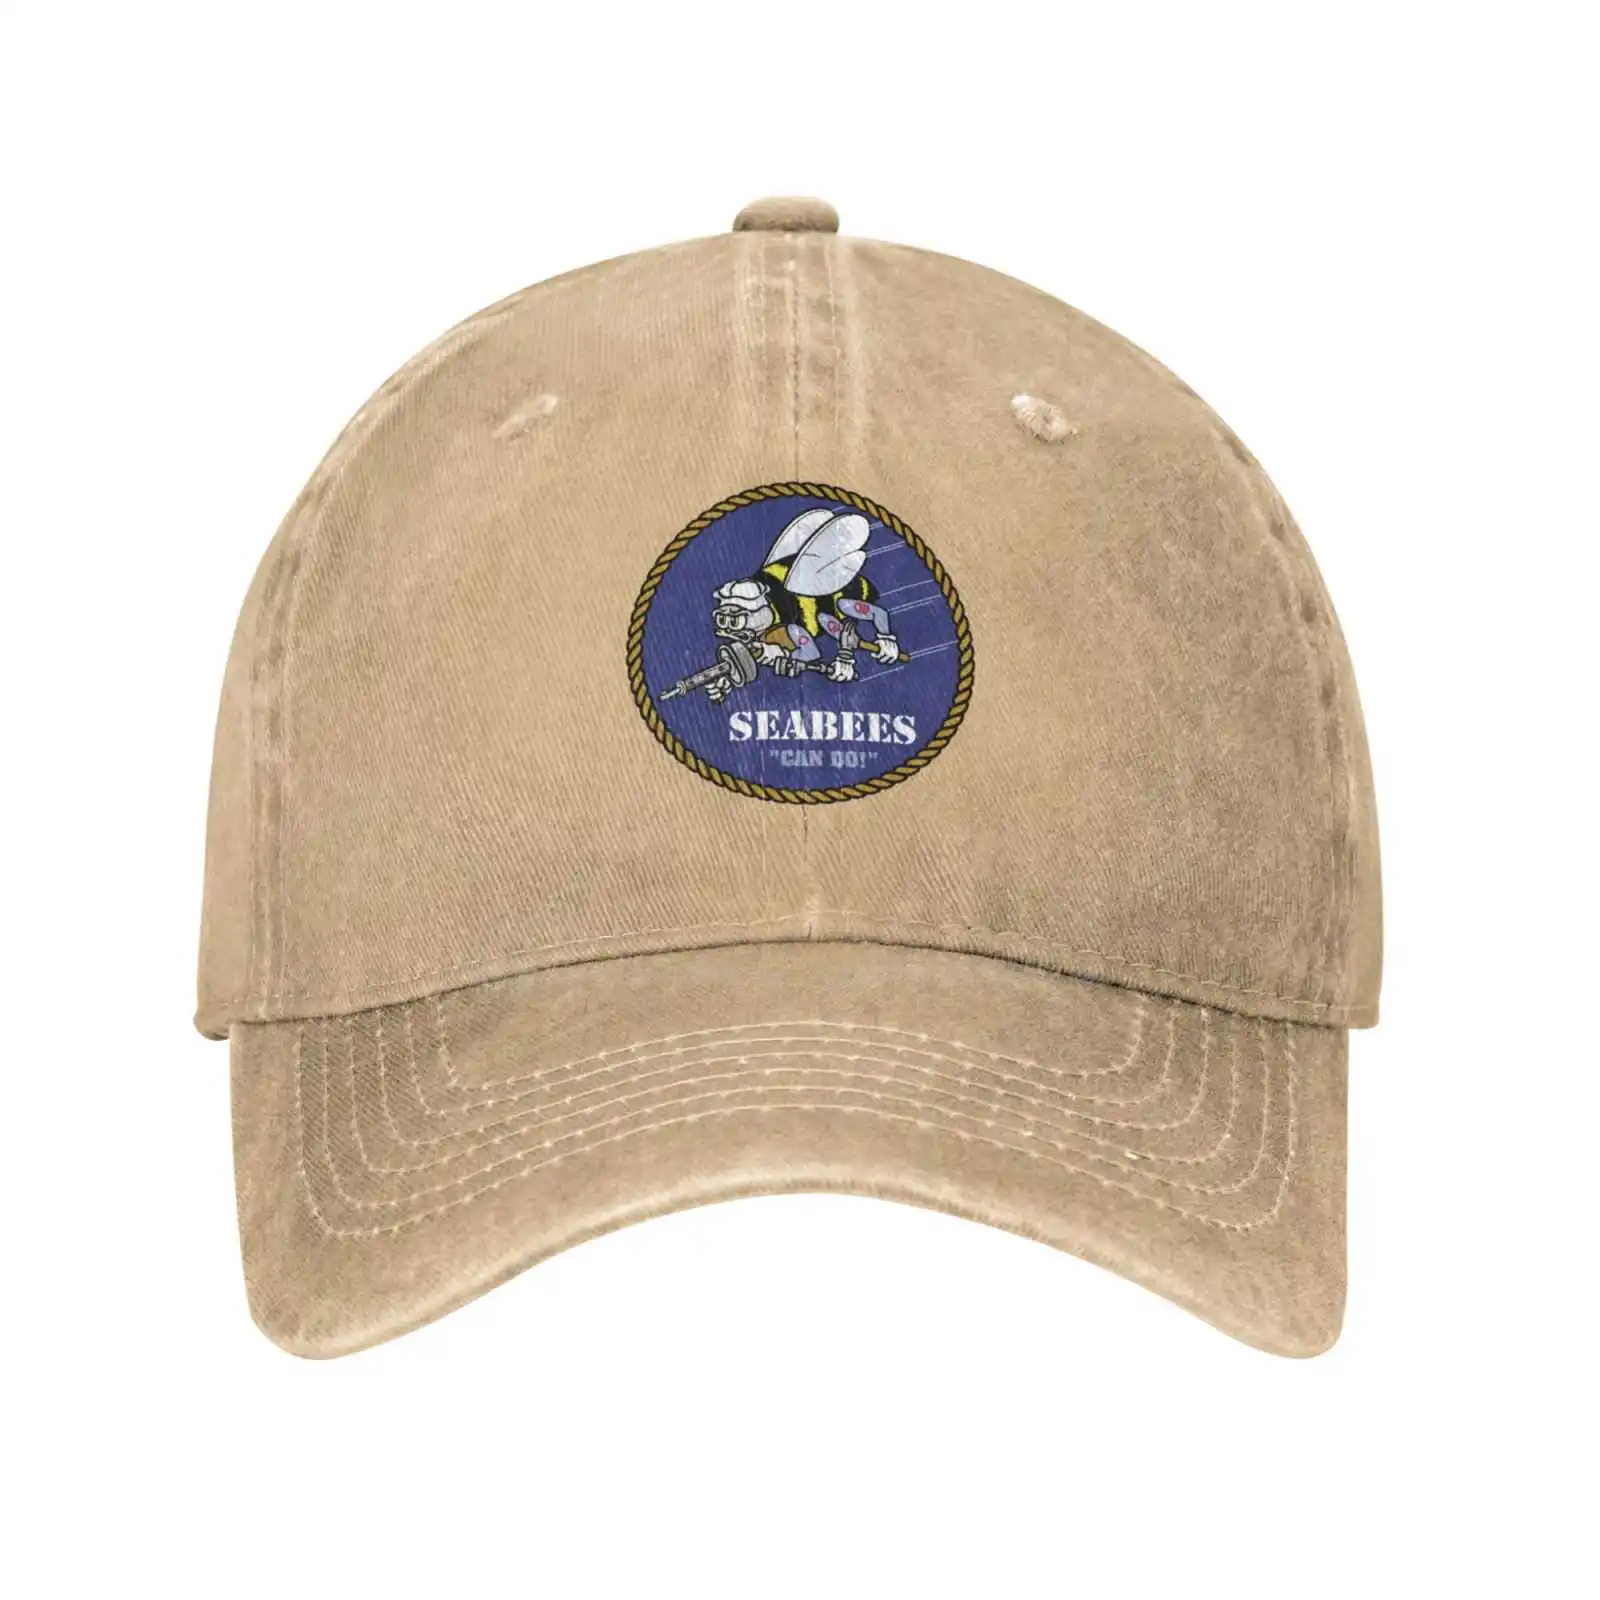 Графическая кепка с логотипом Seabees, высококачественная джинсовая кепка, вязаная шапка, бейсболка . ' - ' . 3